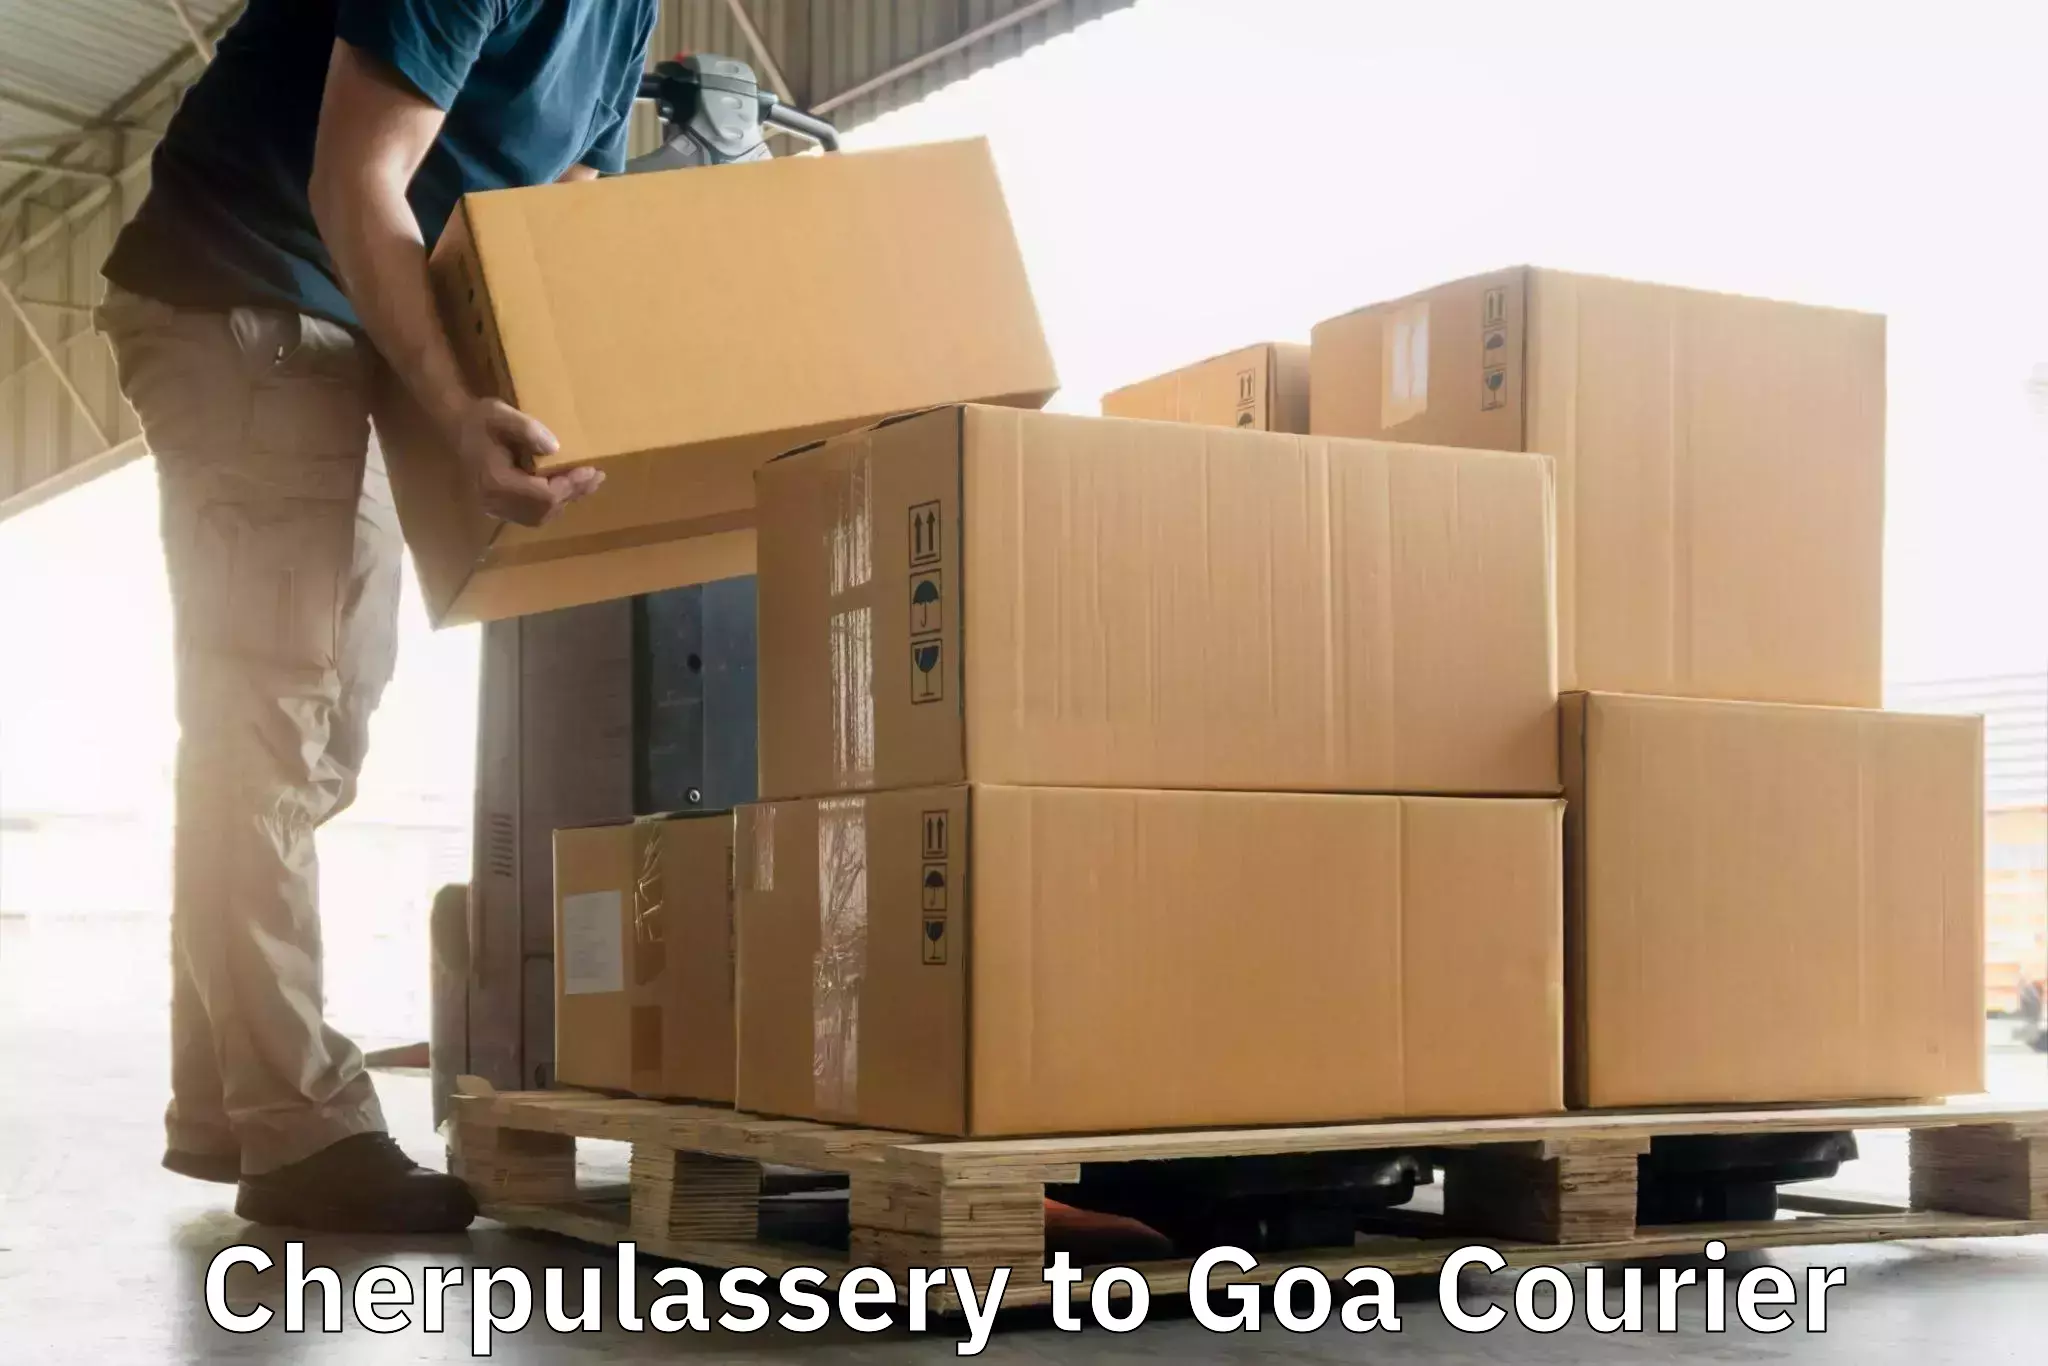 Customer-focused courier Cherpulassery to Goa